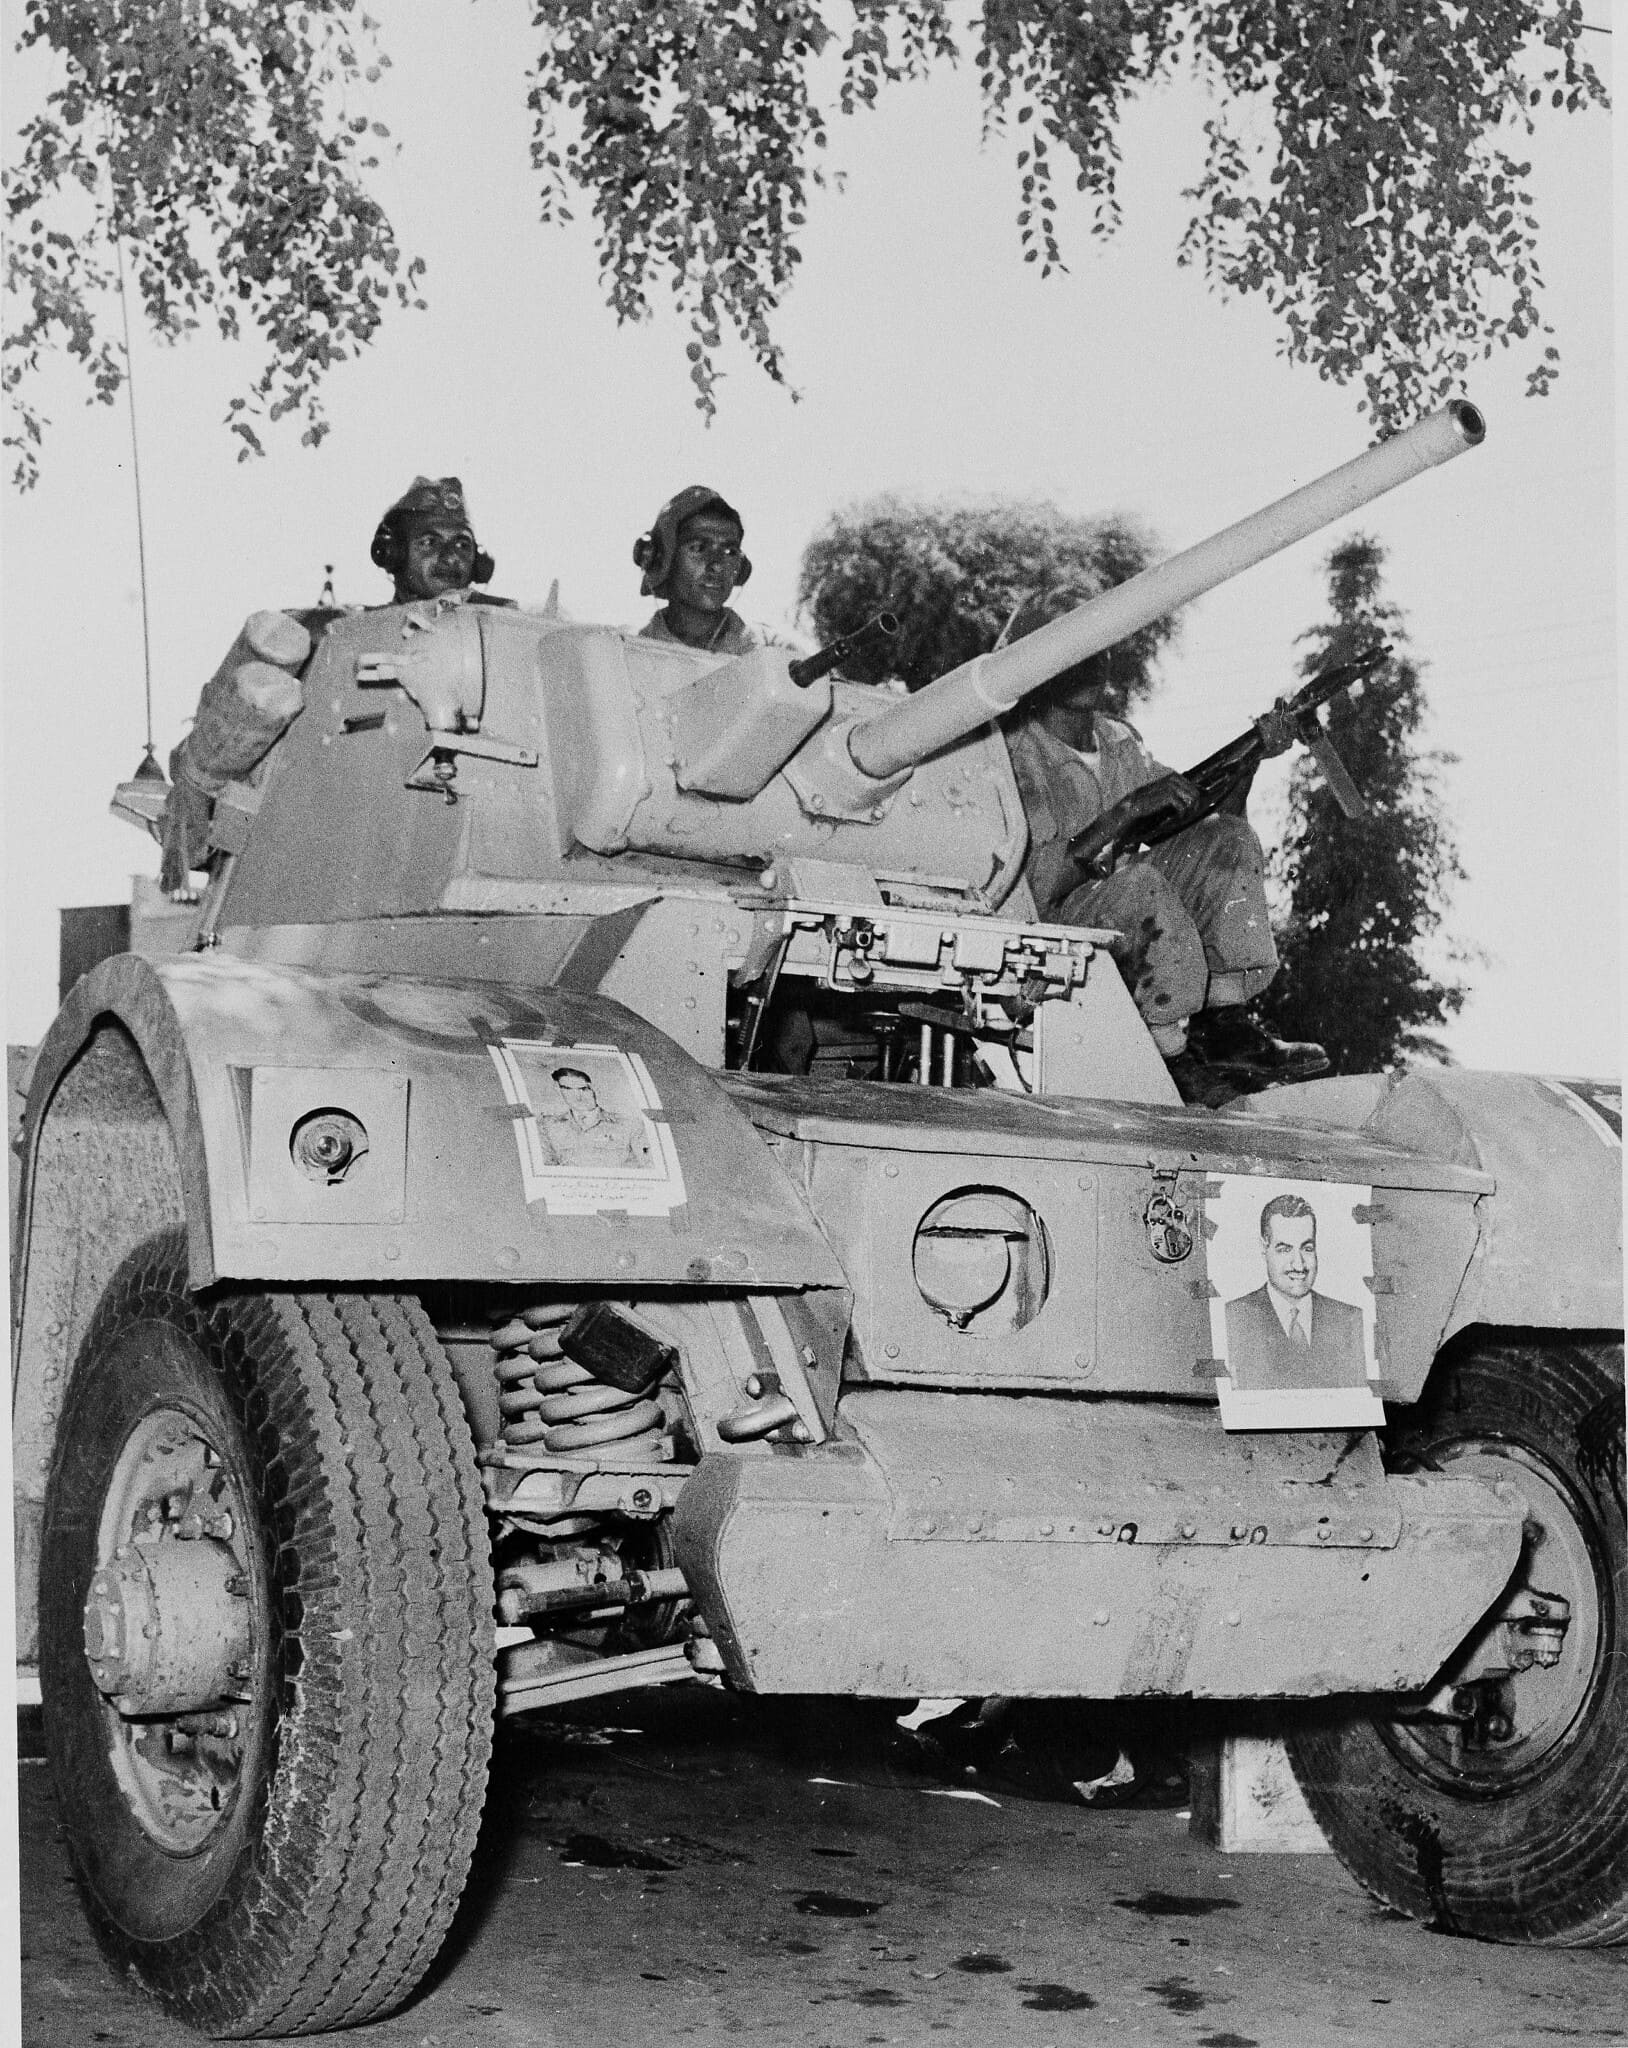 עיראק, 1958, תמונה שצולמה זמן קצר לאחר המהפכה הצבאית במדינה. הטנק מעוטר בתמונות של עבד אל-כרים קאסם (צילום: AP)